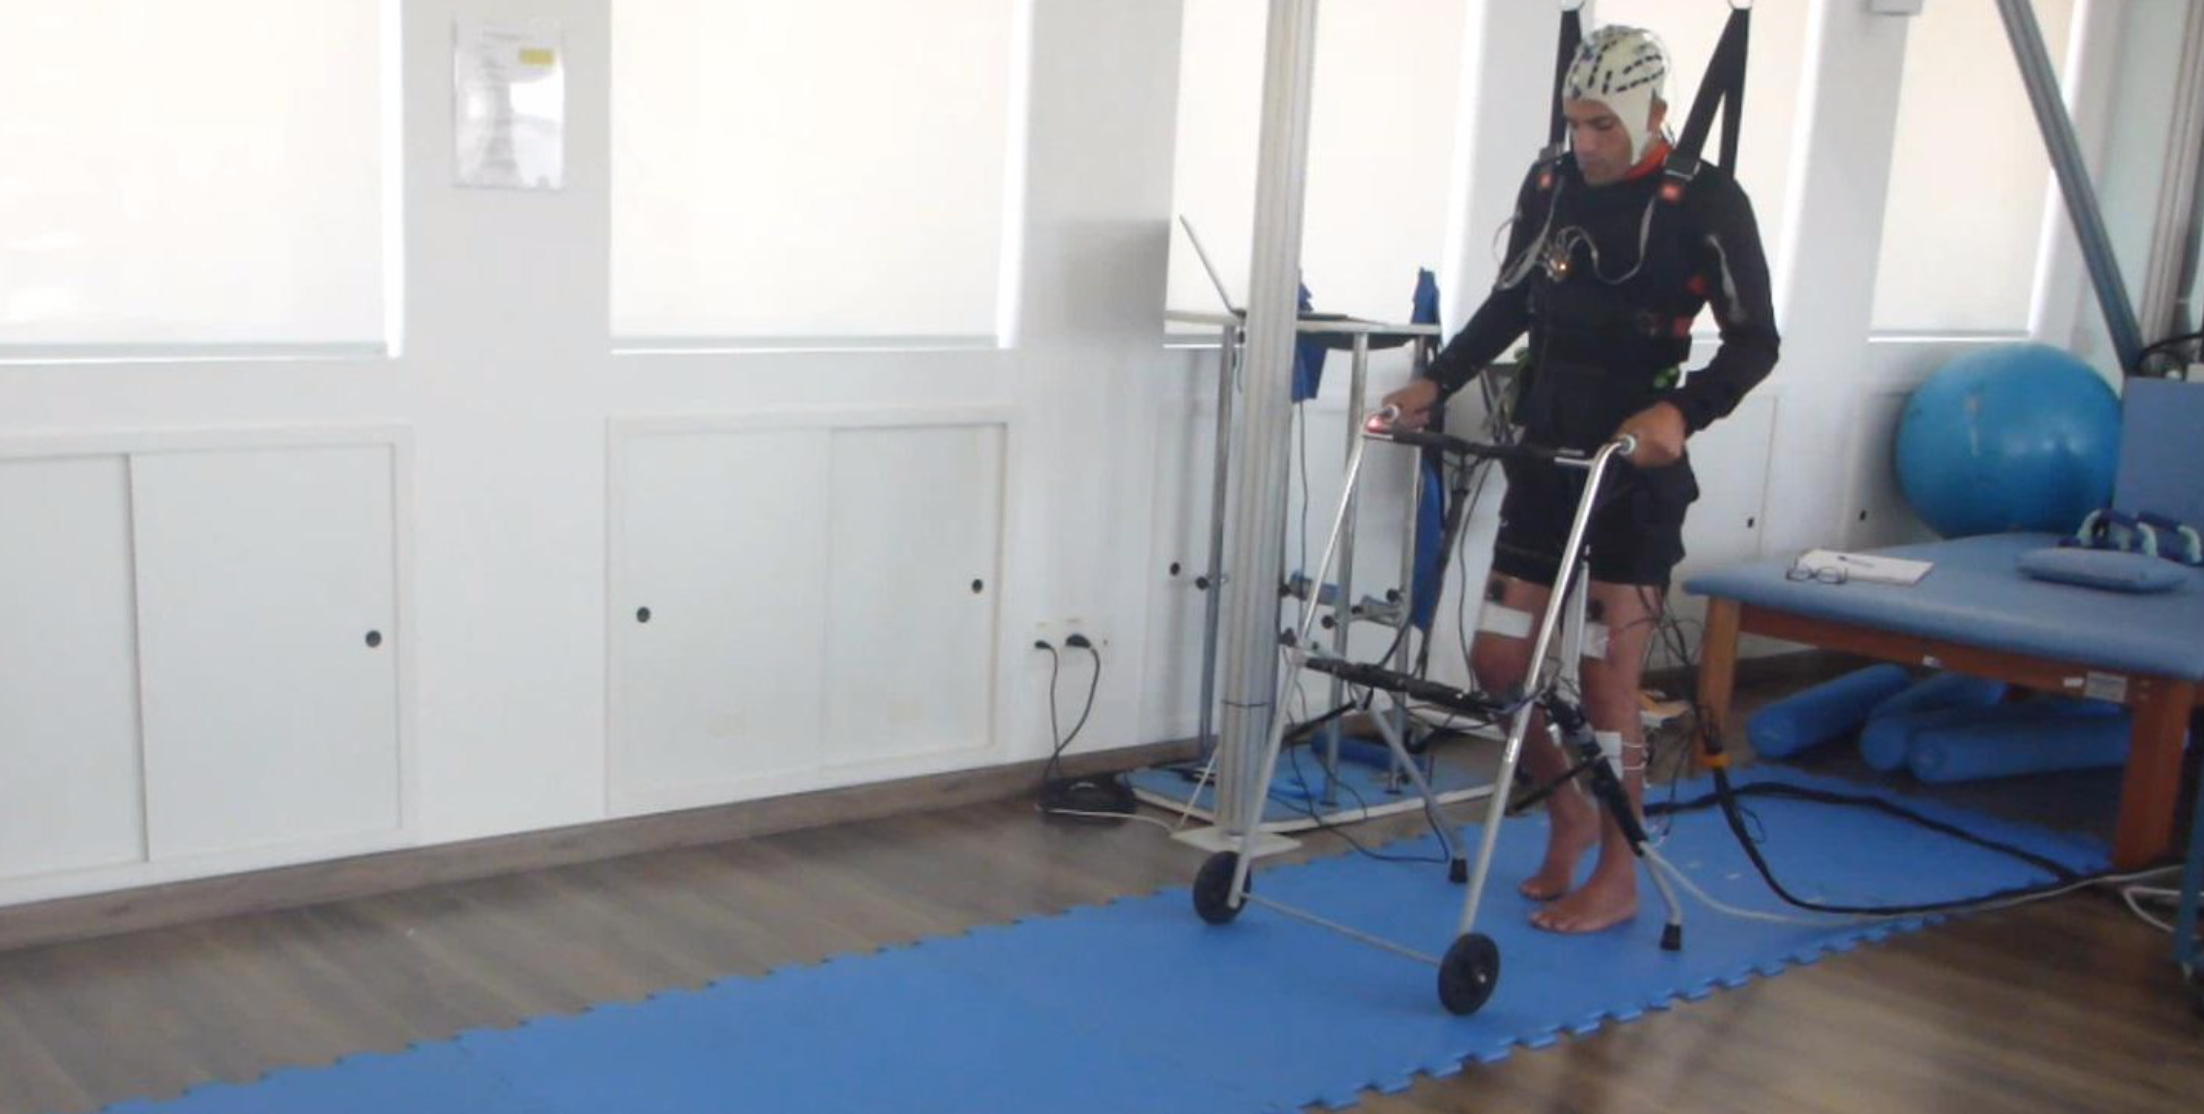 Study: Noninvasive BCI improves function in paraplegia